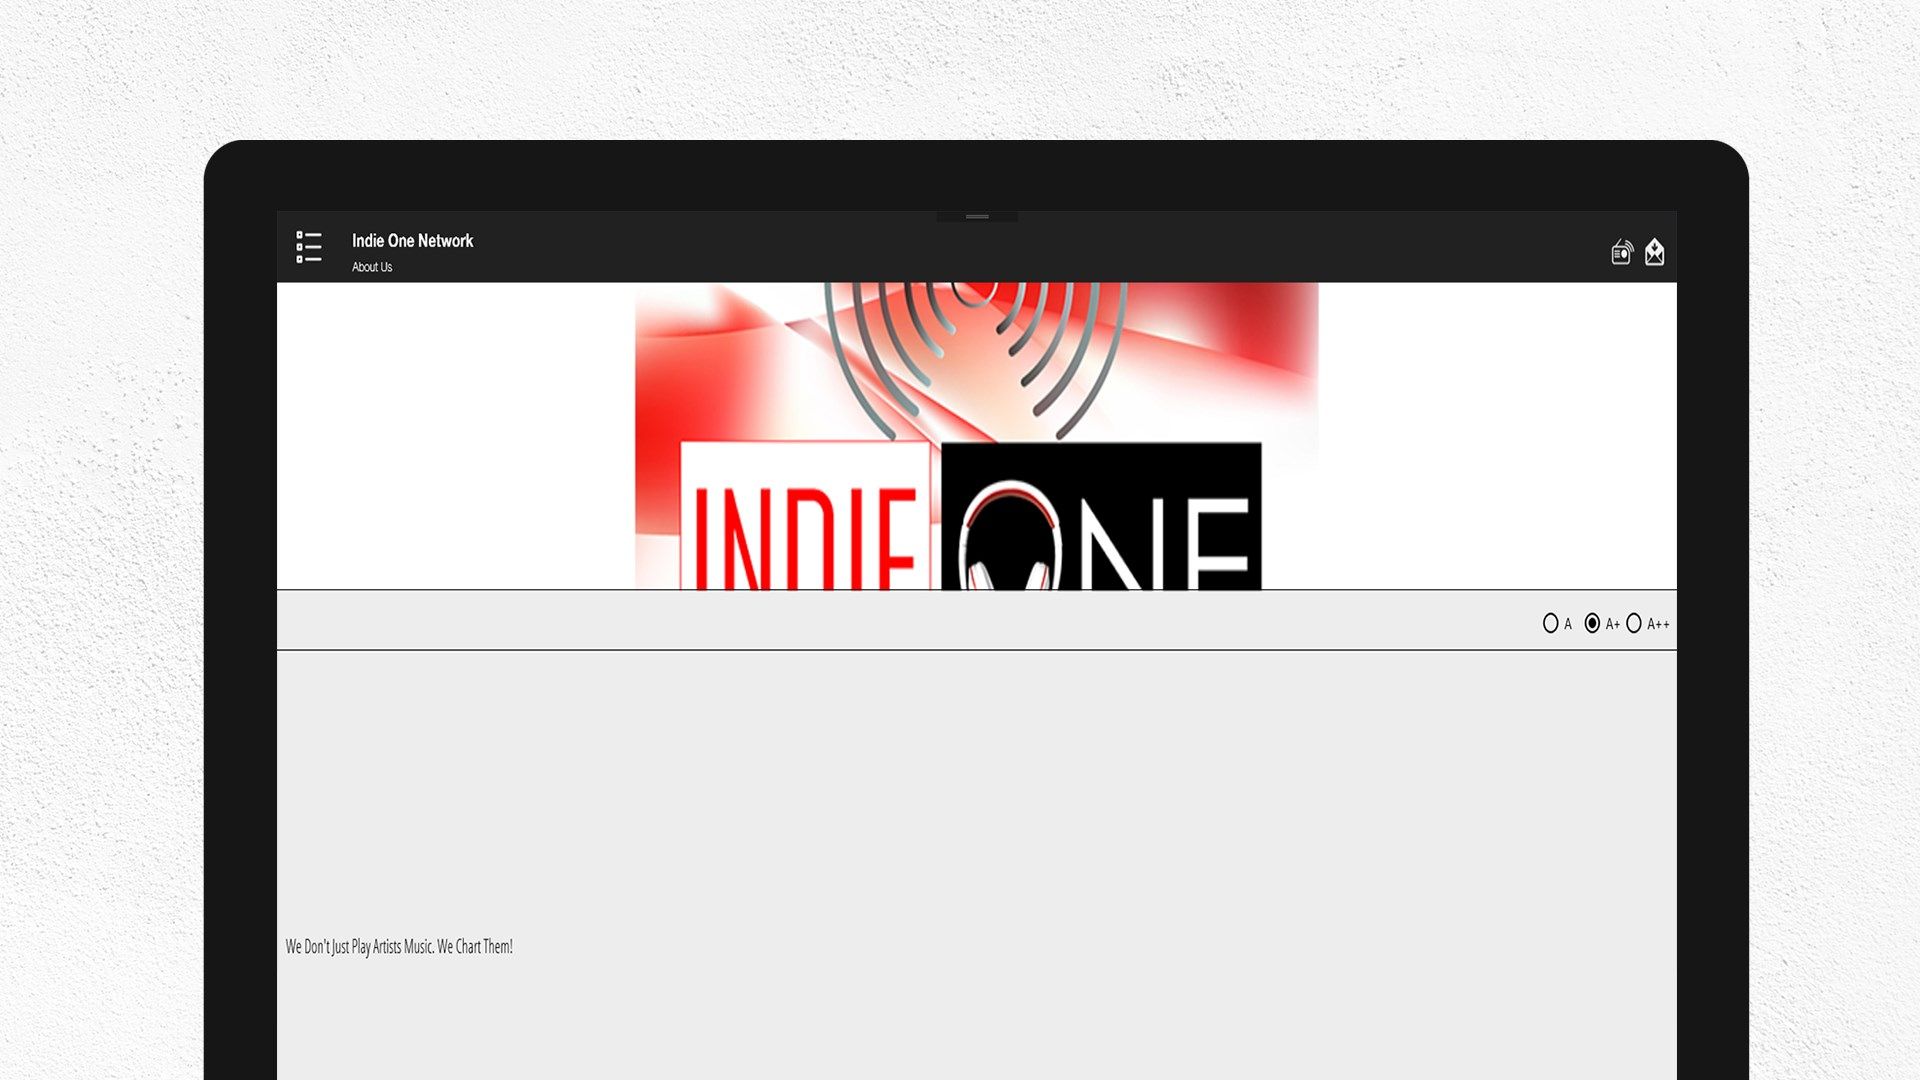 Indie One Network